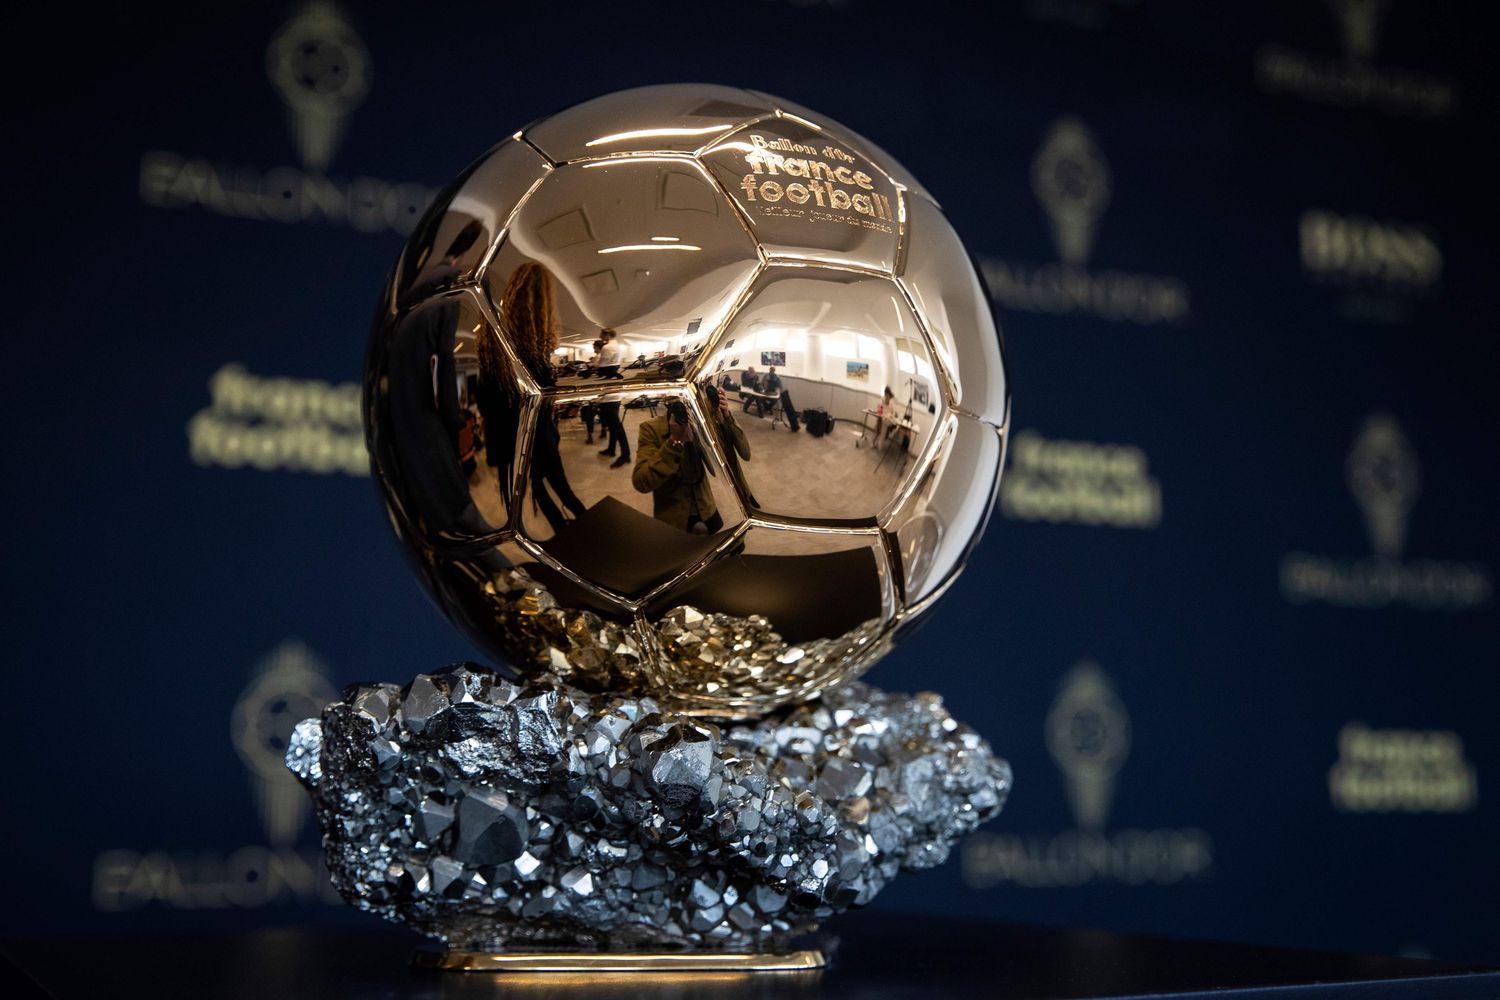 Balon de Oro - Otro gol de la pandemia al futbol, no habrá Balón de Oro